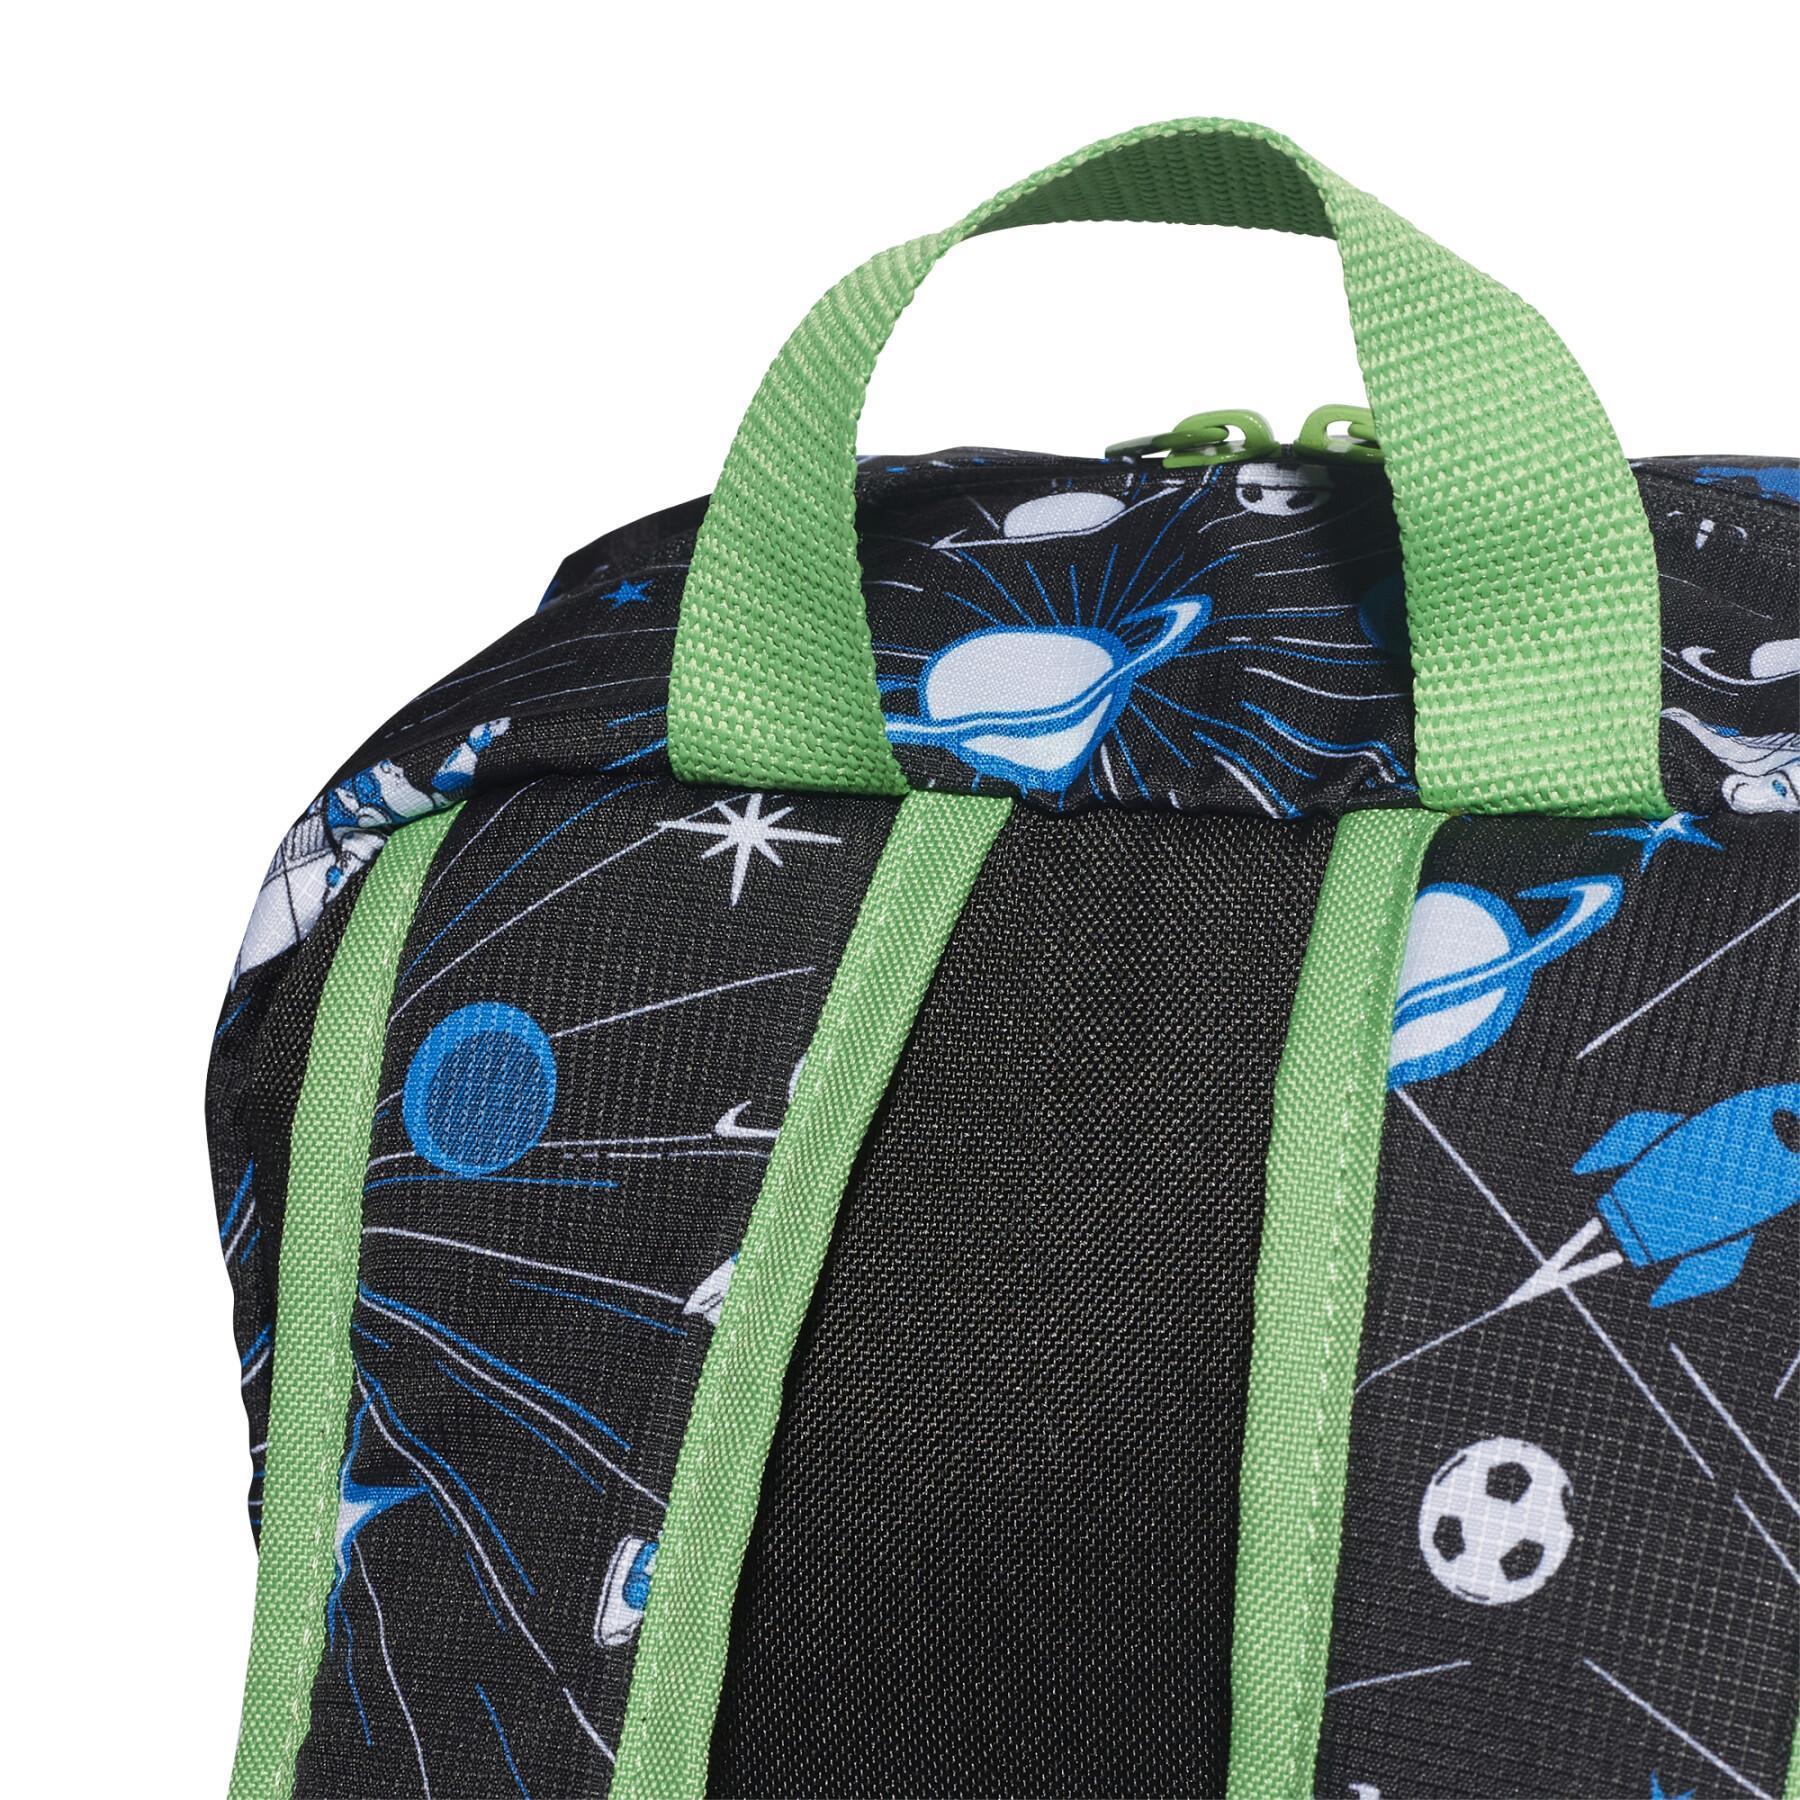 Plecak dla dzieci adidas Disney Buzz Lightyear